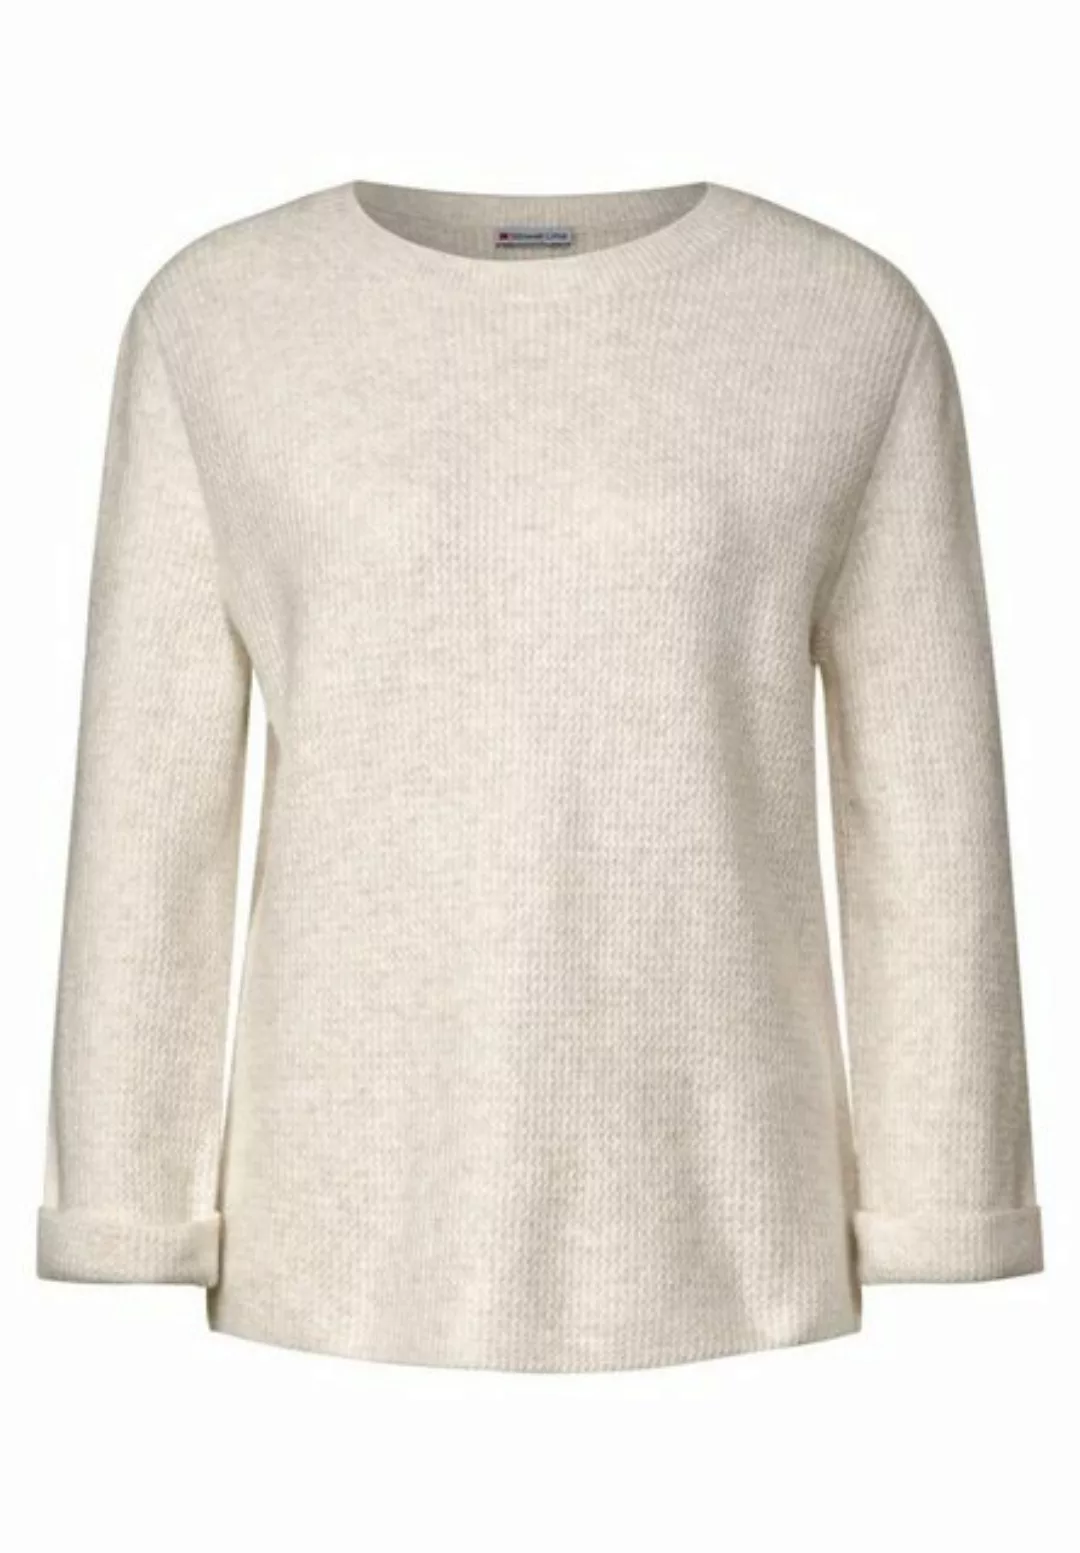 STREET ONE Sweatshirt LTD QR round neck with structu, cream white melange günstig online kaufen